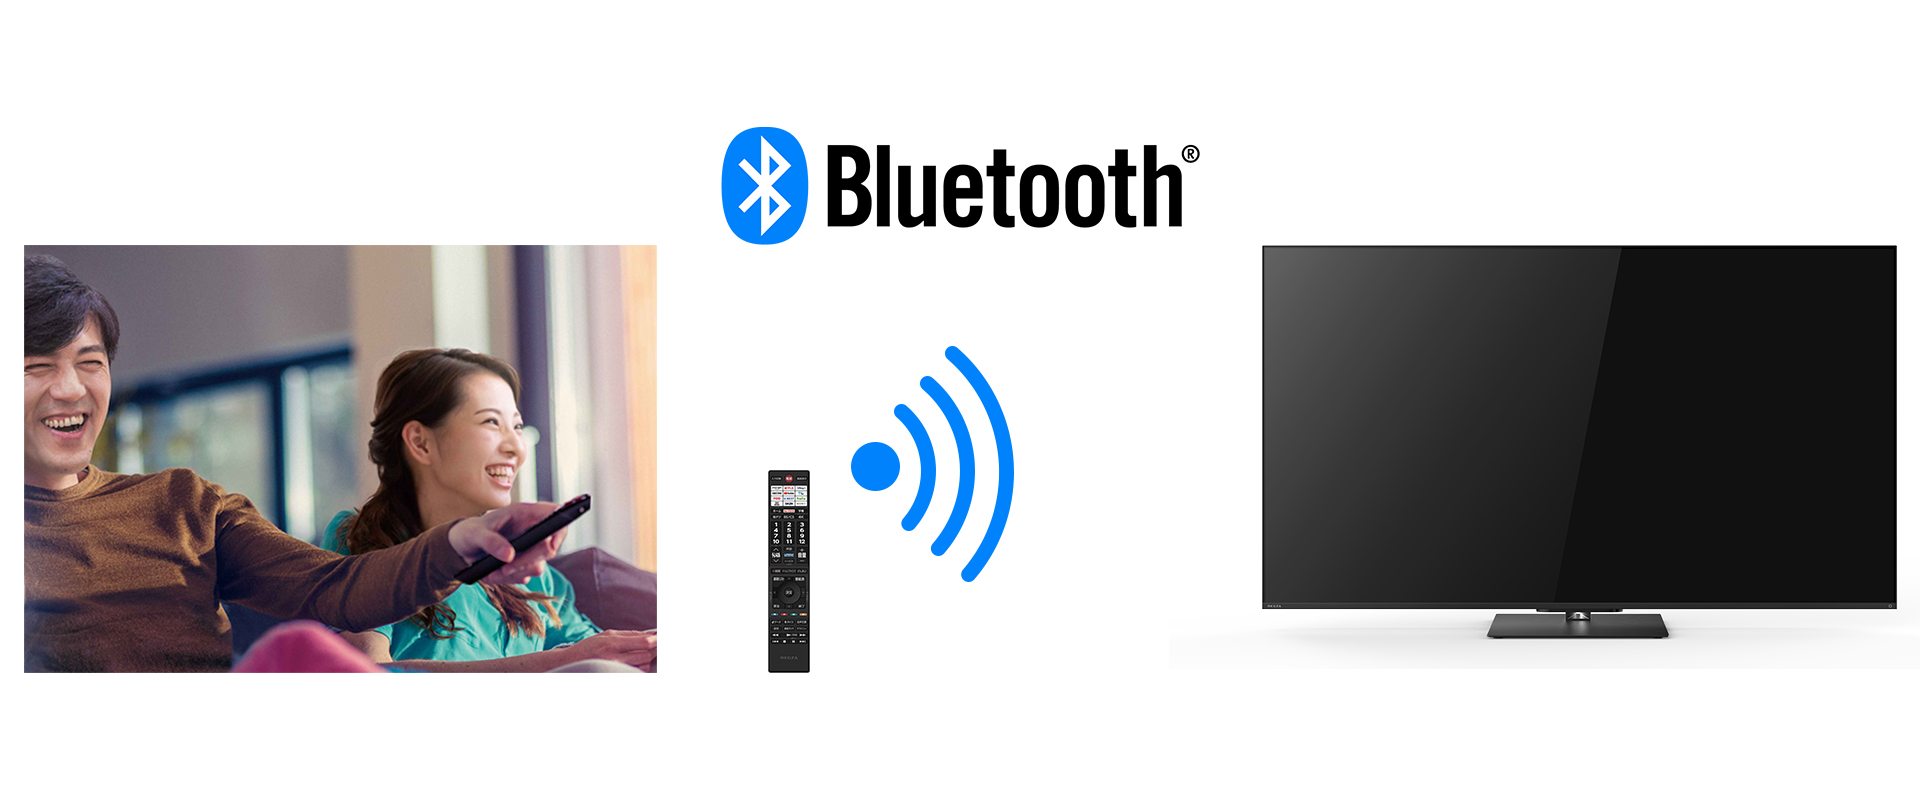 Bluetoothコントロールリモコン_レグザ